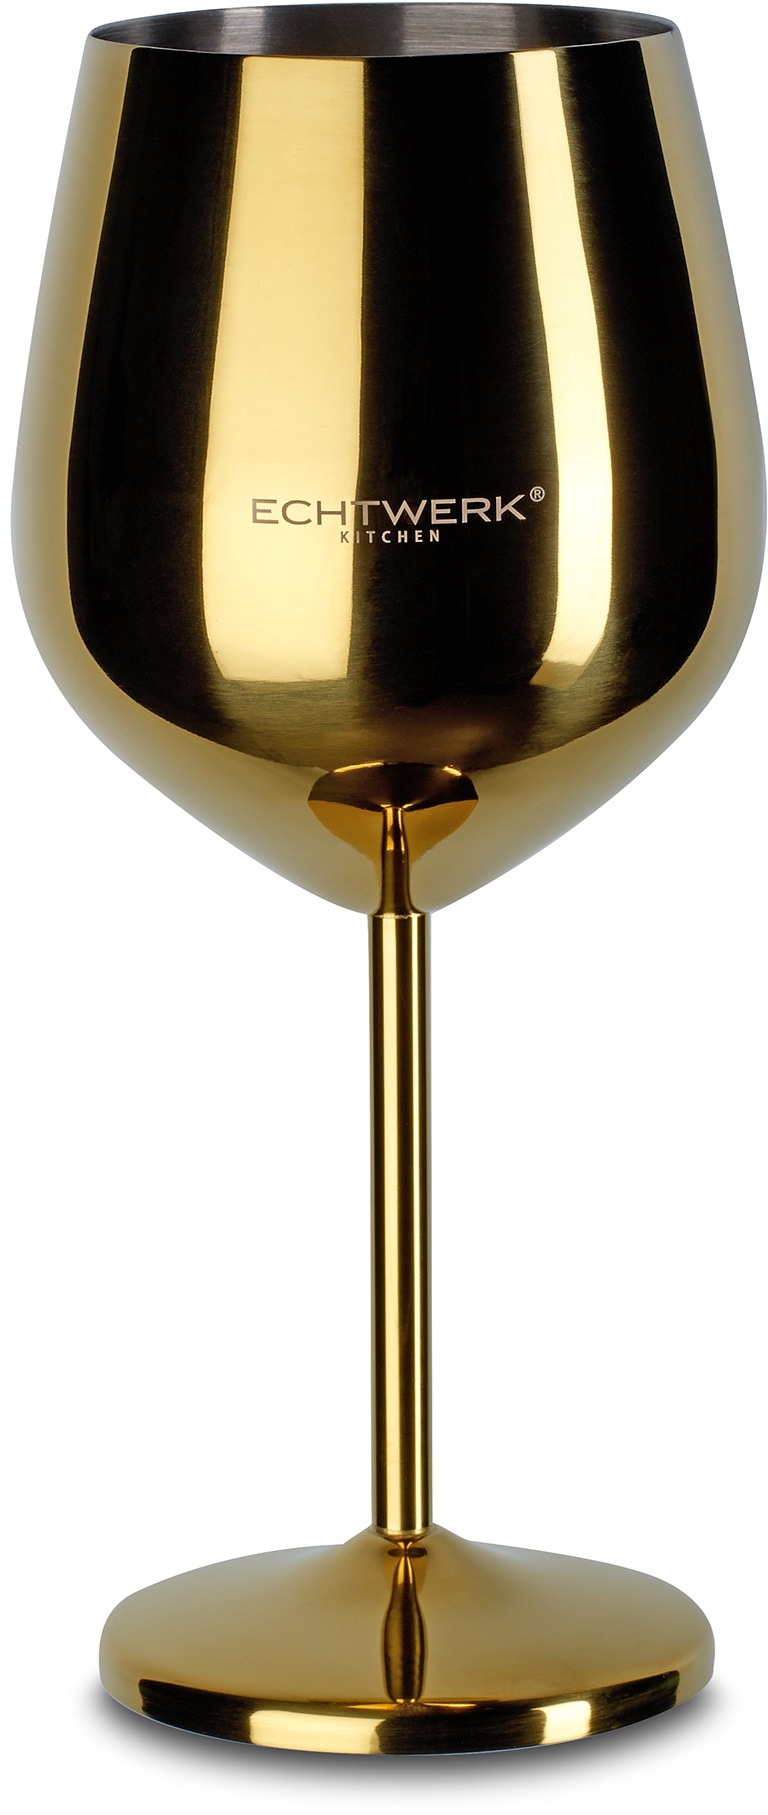 ECHTWERK Weinglas, (Set, 2 tlg.), PVD Beschichtung, 2-teilig, 0,5 Liter